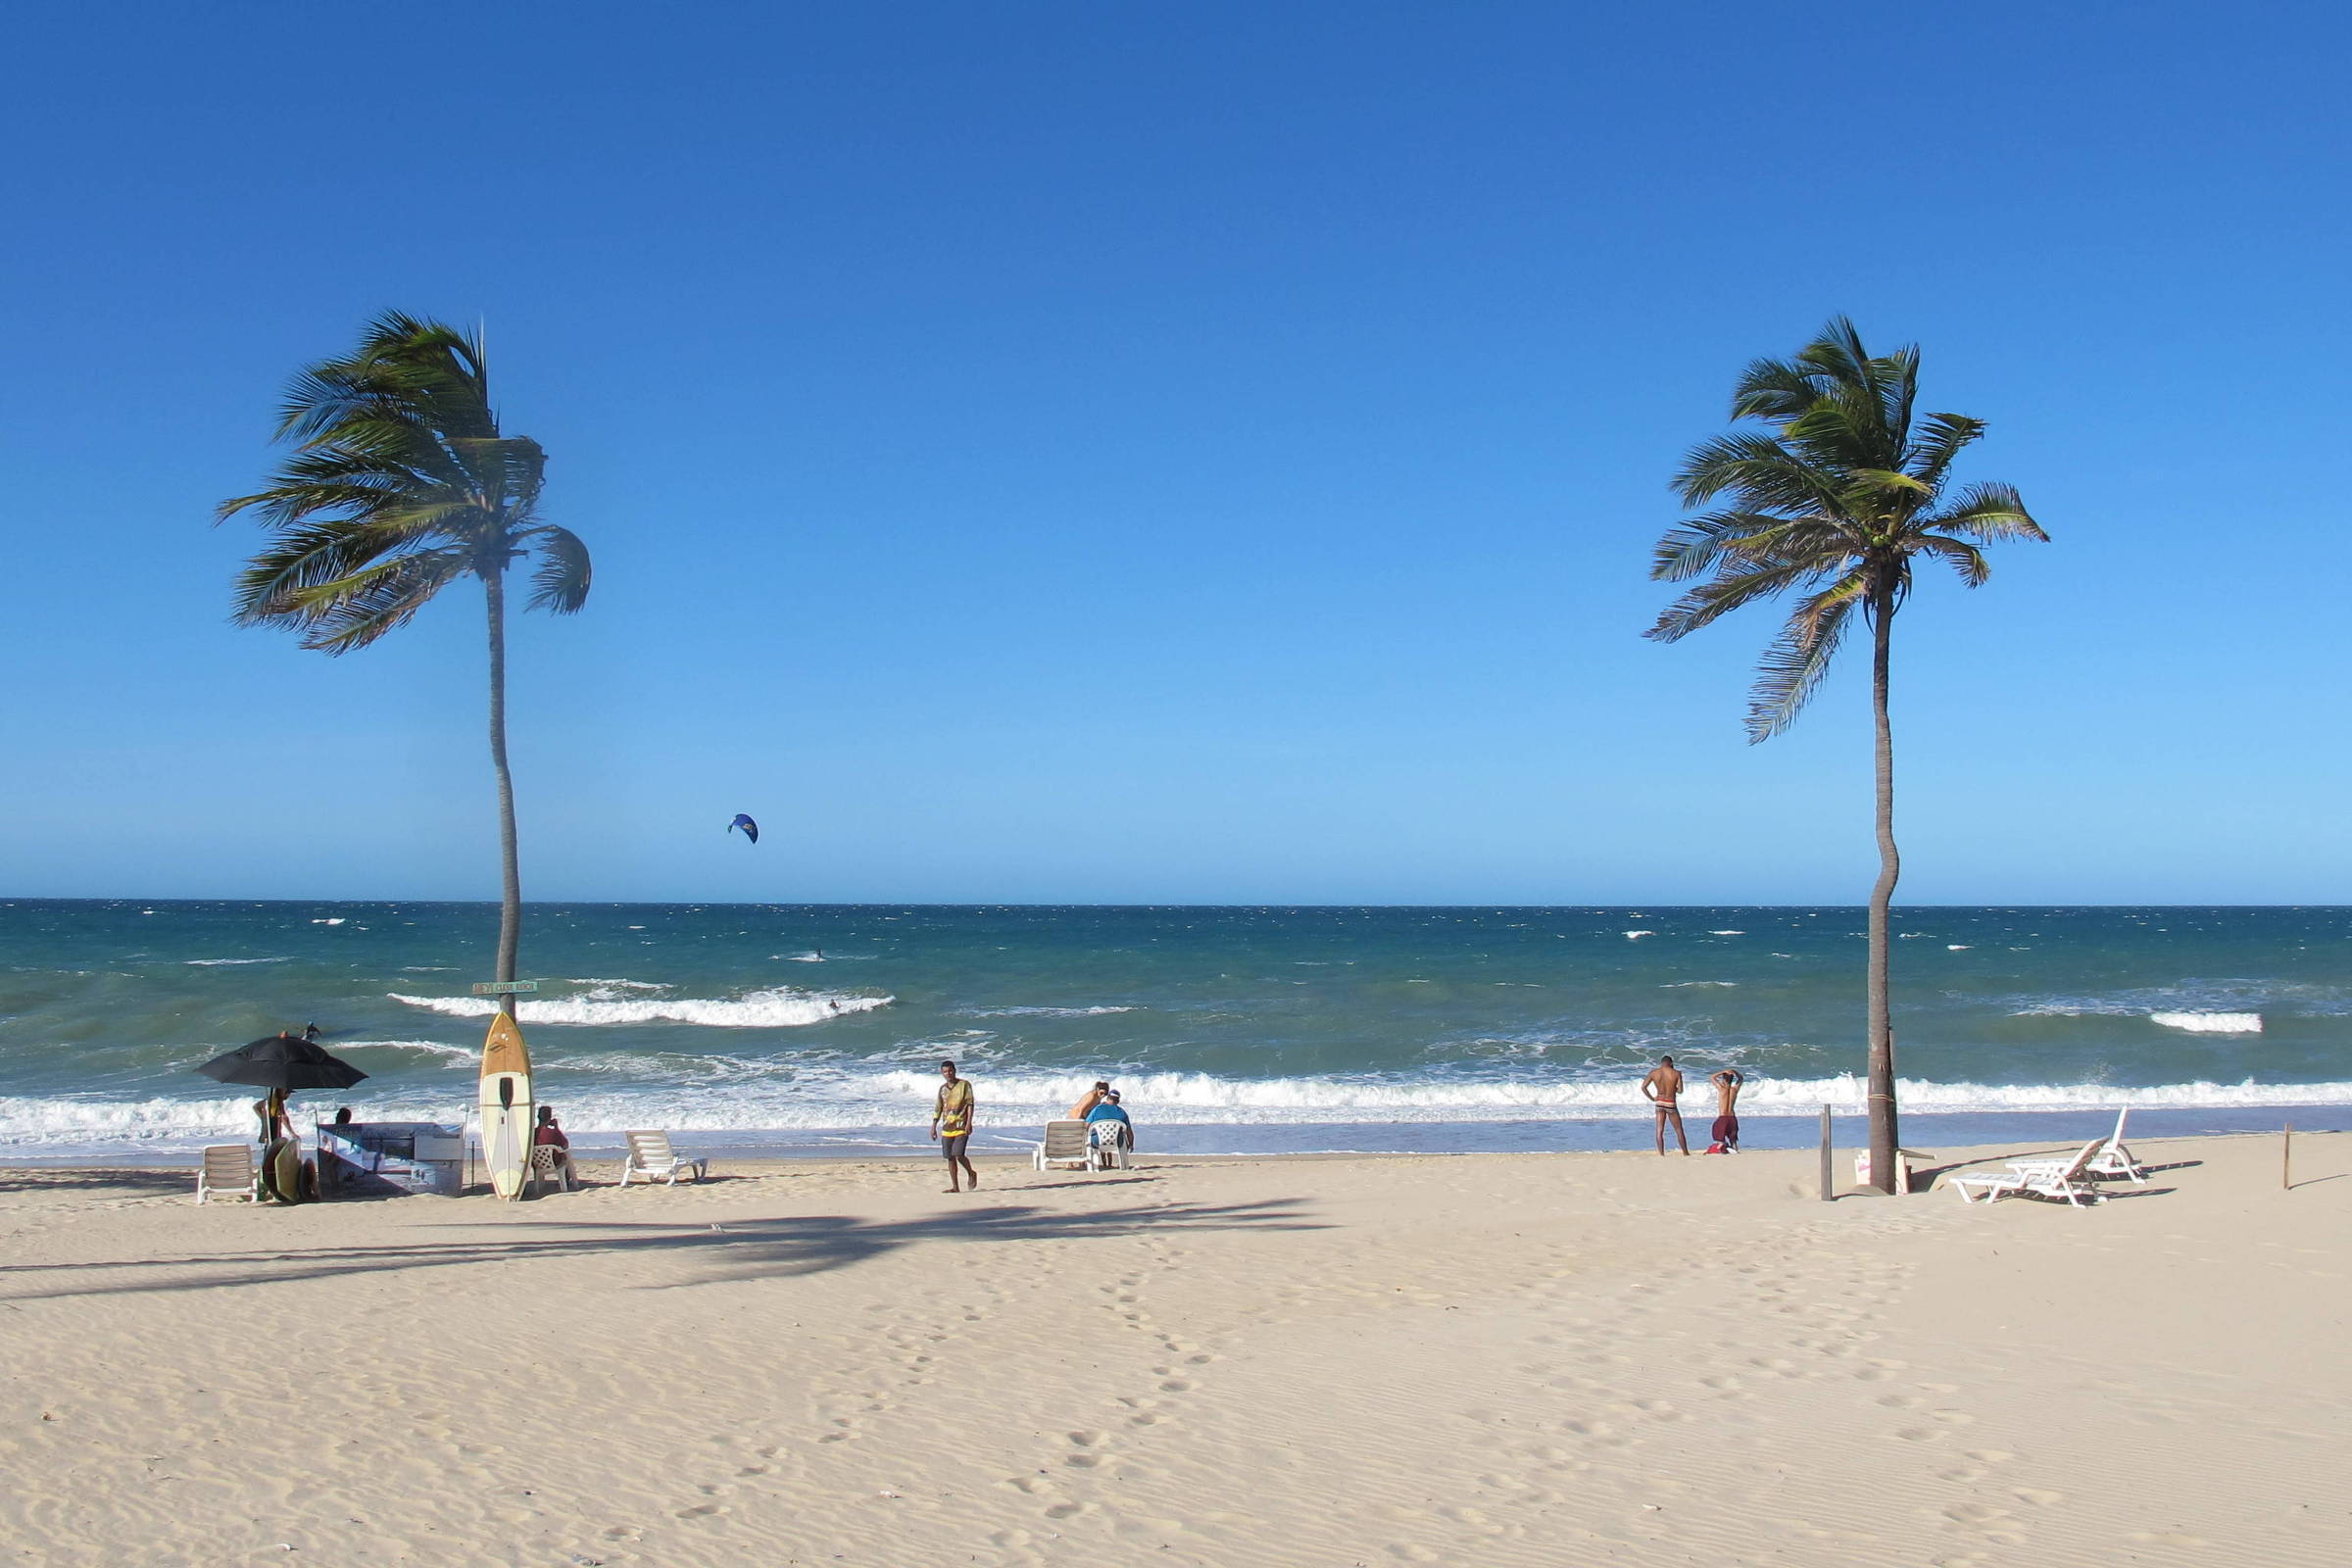 imagem da Praia do Cumbuco, uma das praias em Fortaleza. a imagem contém palmeiras com suas folhas levadas ao vento, uma prancha, algumas pessoas e pegada sobre a areia. o mar está em movimento